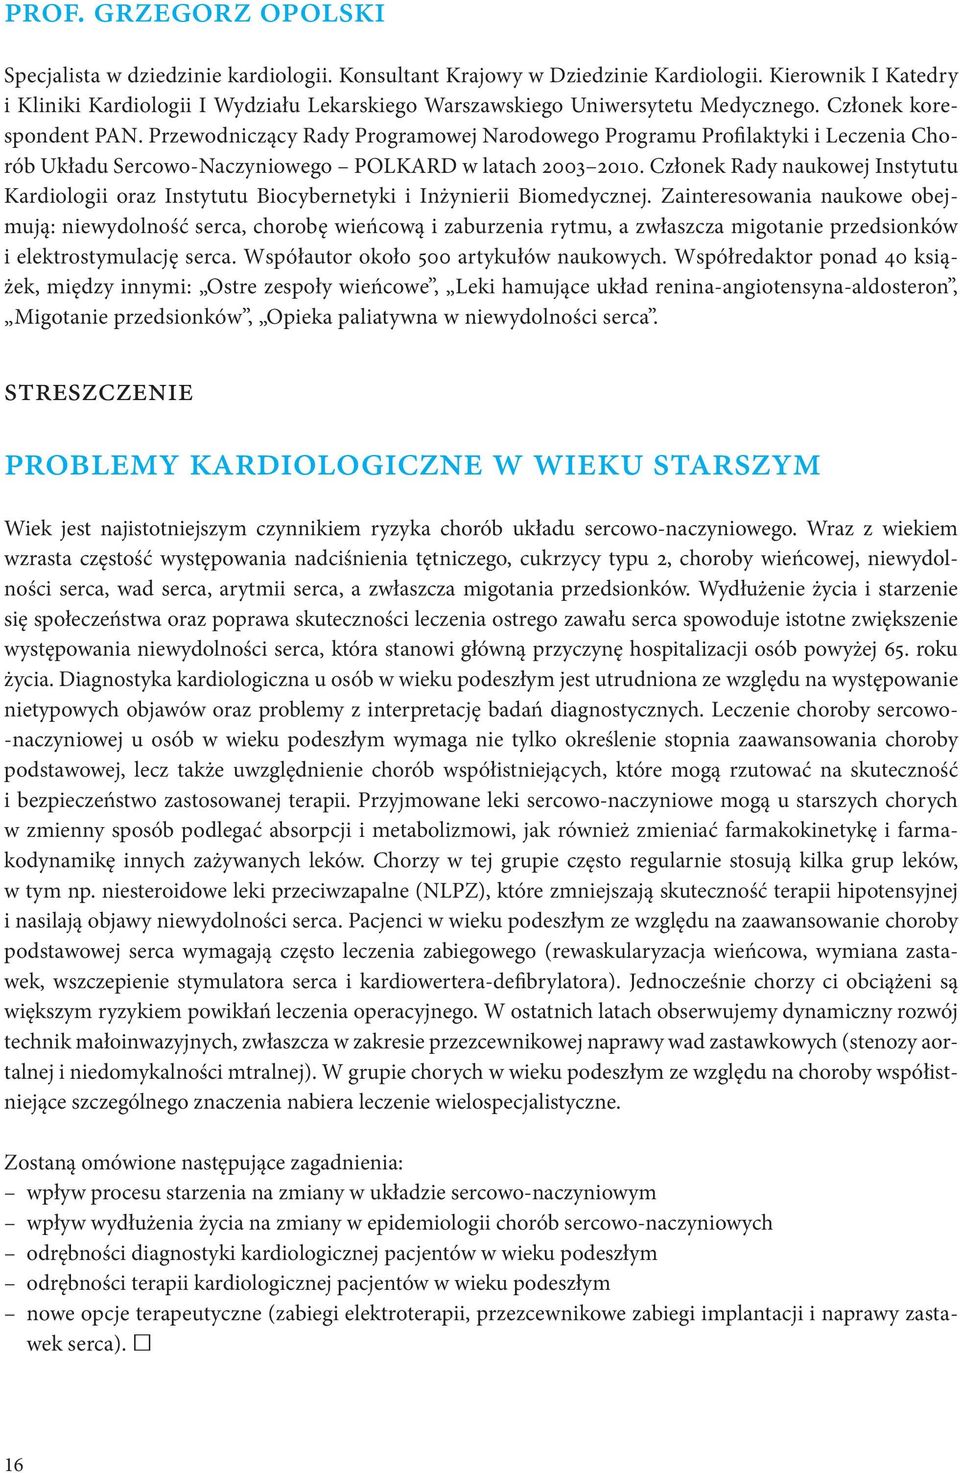 Przewodniczący Rady Programowej Narodowego Programu Profilaktyki i Leczenia Chorób Układu Sercowo-Naczyniowego POLKARD w latach 2003 2010.